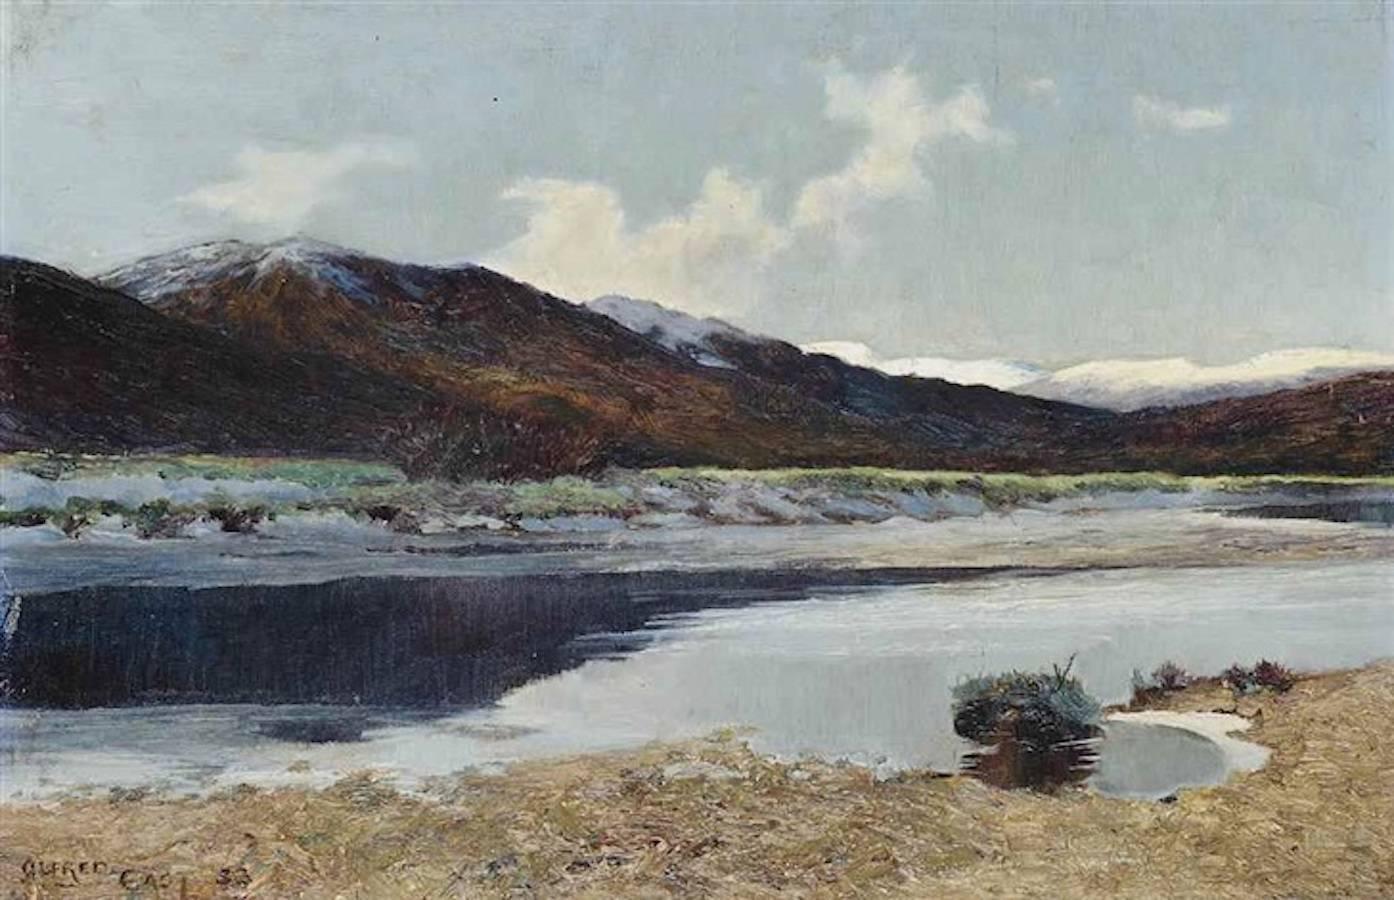 Lac et montagne : un paysage écossais par Sir Alfred East (1844-1913)

Huile sur toile
Clairement signé.
Dans un cadre doré d'origine.
Taille totale incluant la peinture et le cadre : 40cm x 55cm x 3cm

Sir Alfred East est né en 1844 à Kettering,